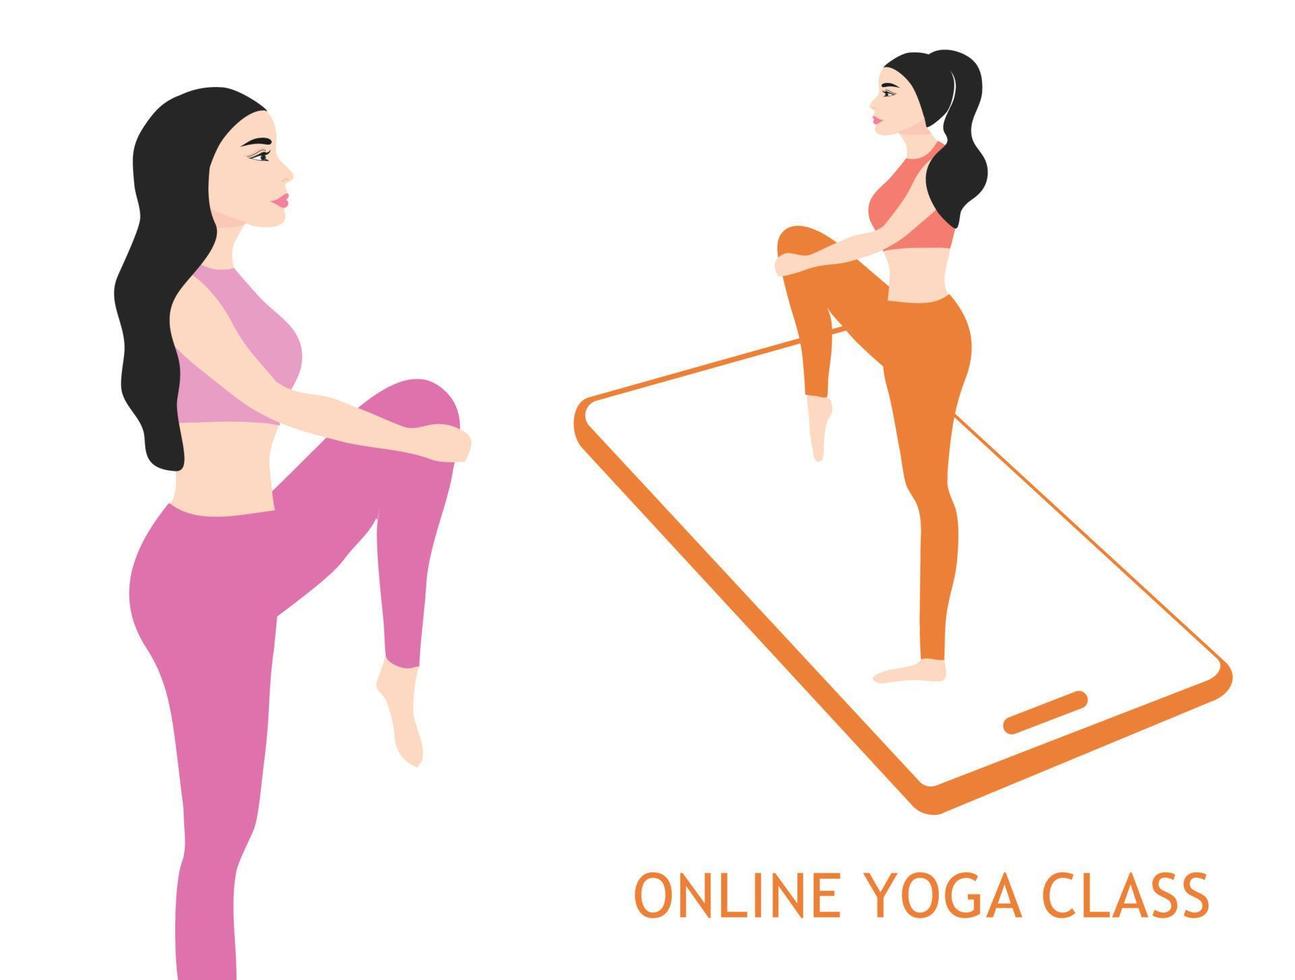 aula de ioga online em casa ilustração vetorial vetor